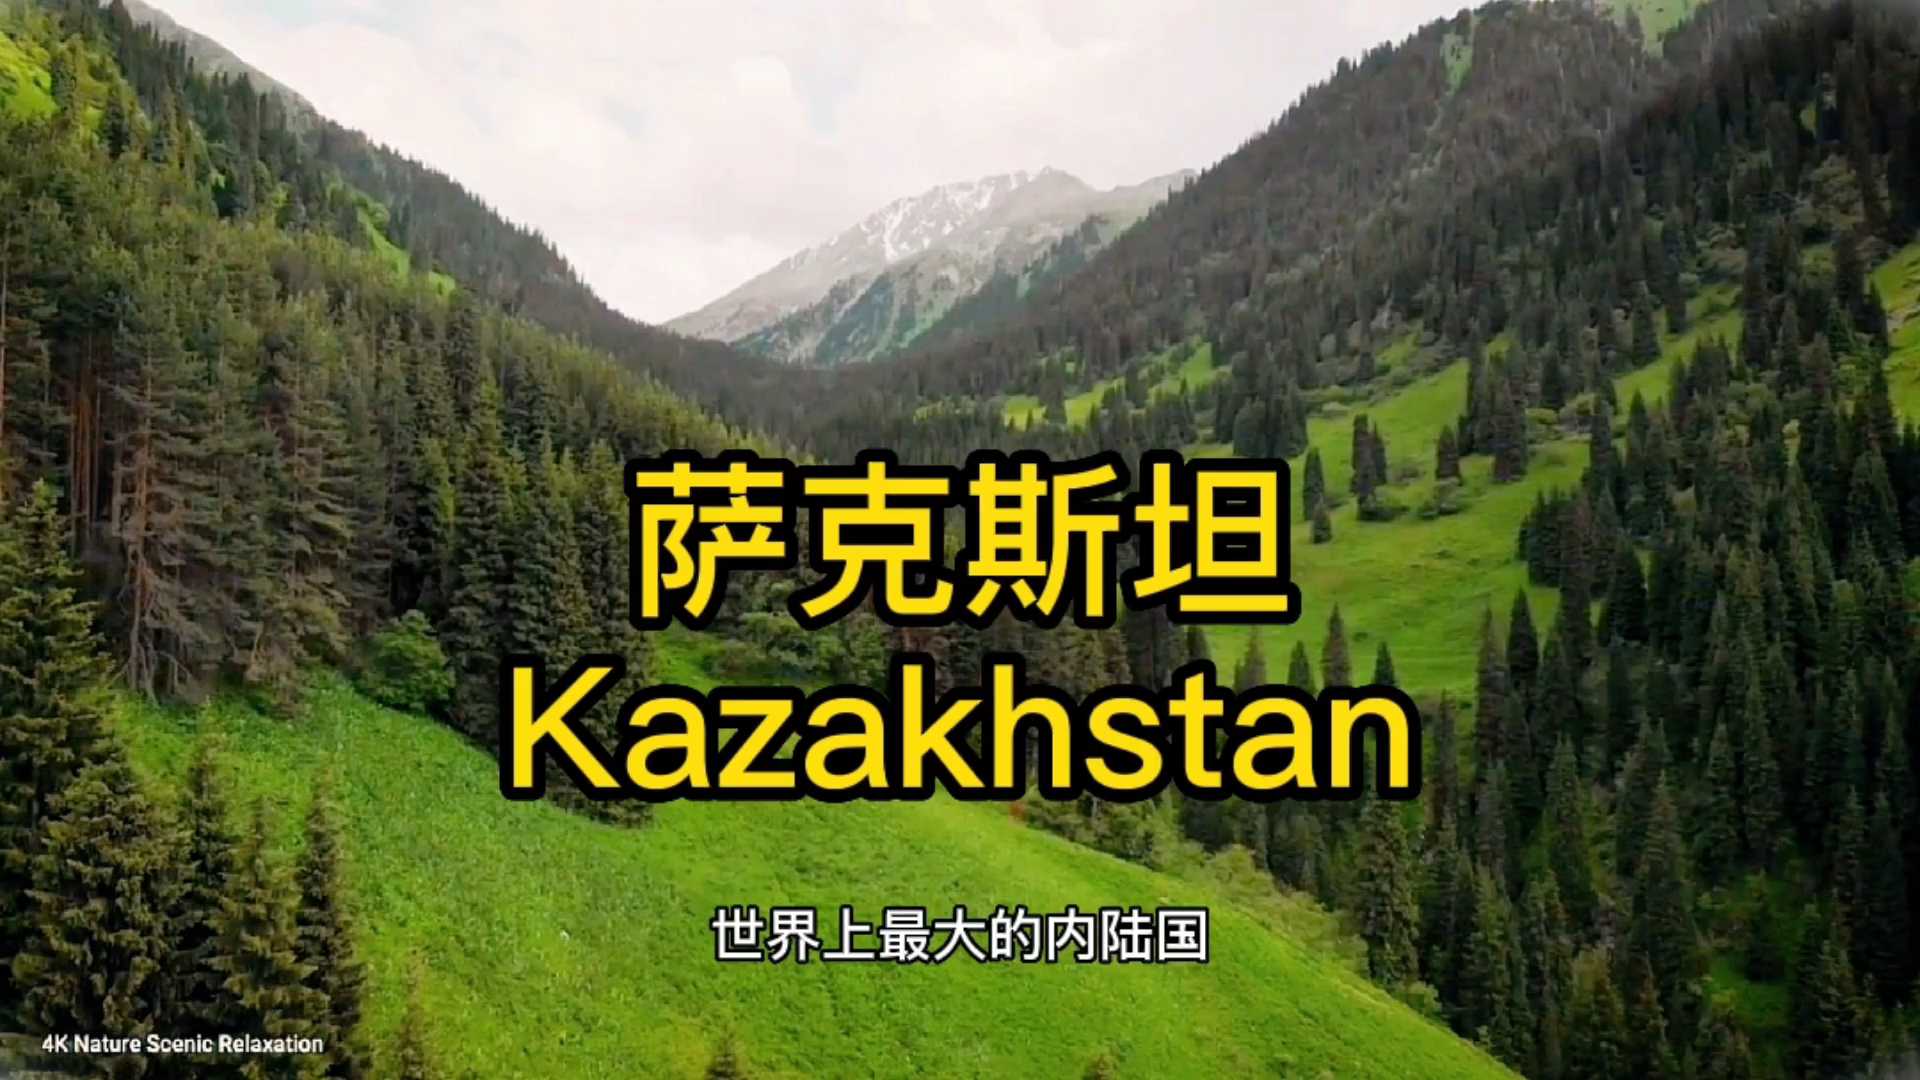 今天带你了解一下@哈萨克斯坦